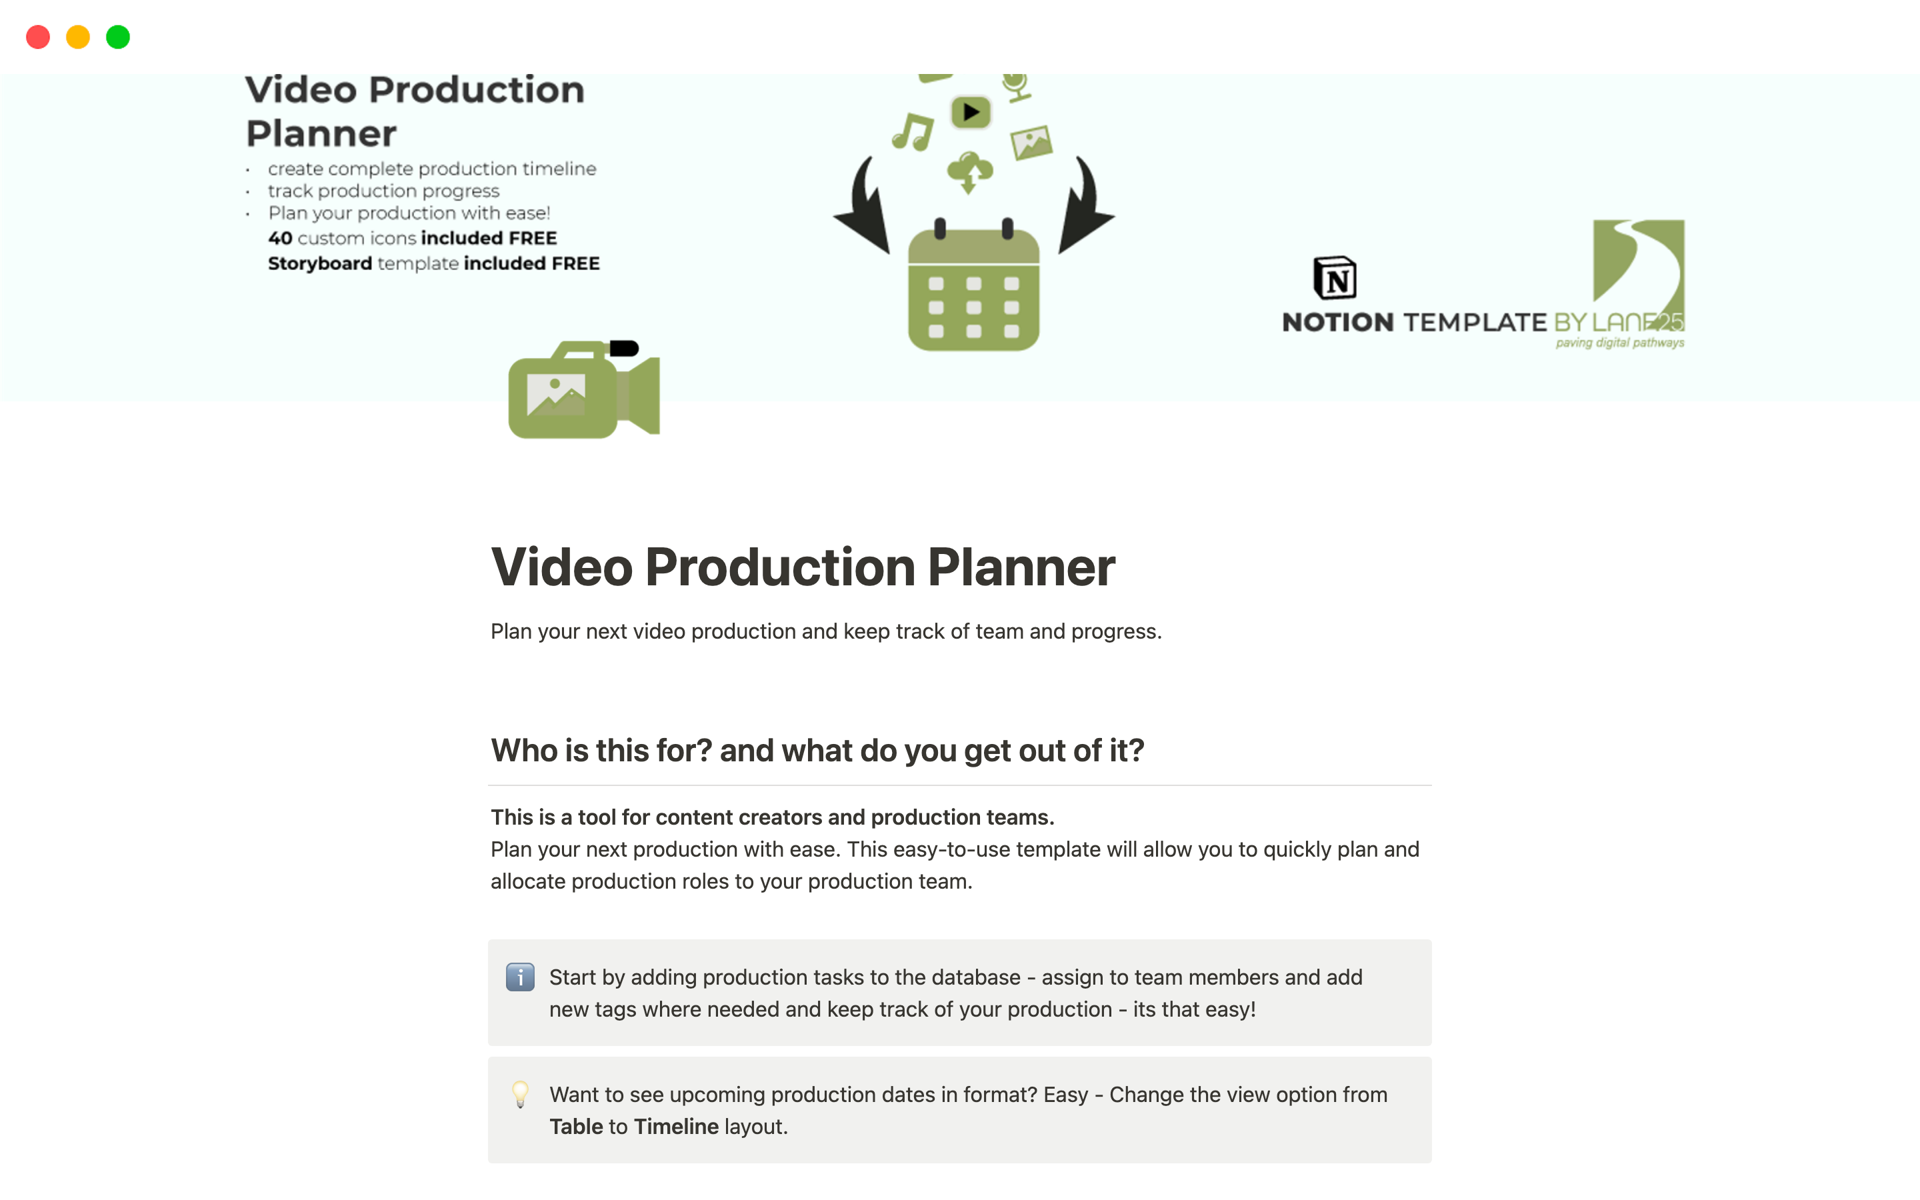 Vista previa de una plantilla para Video Production Planner